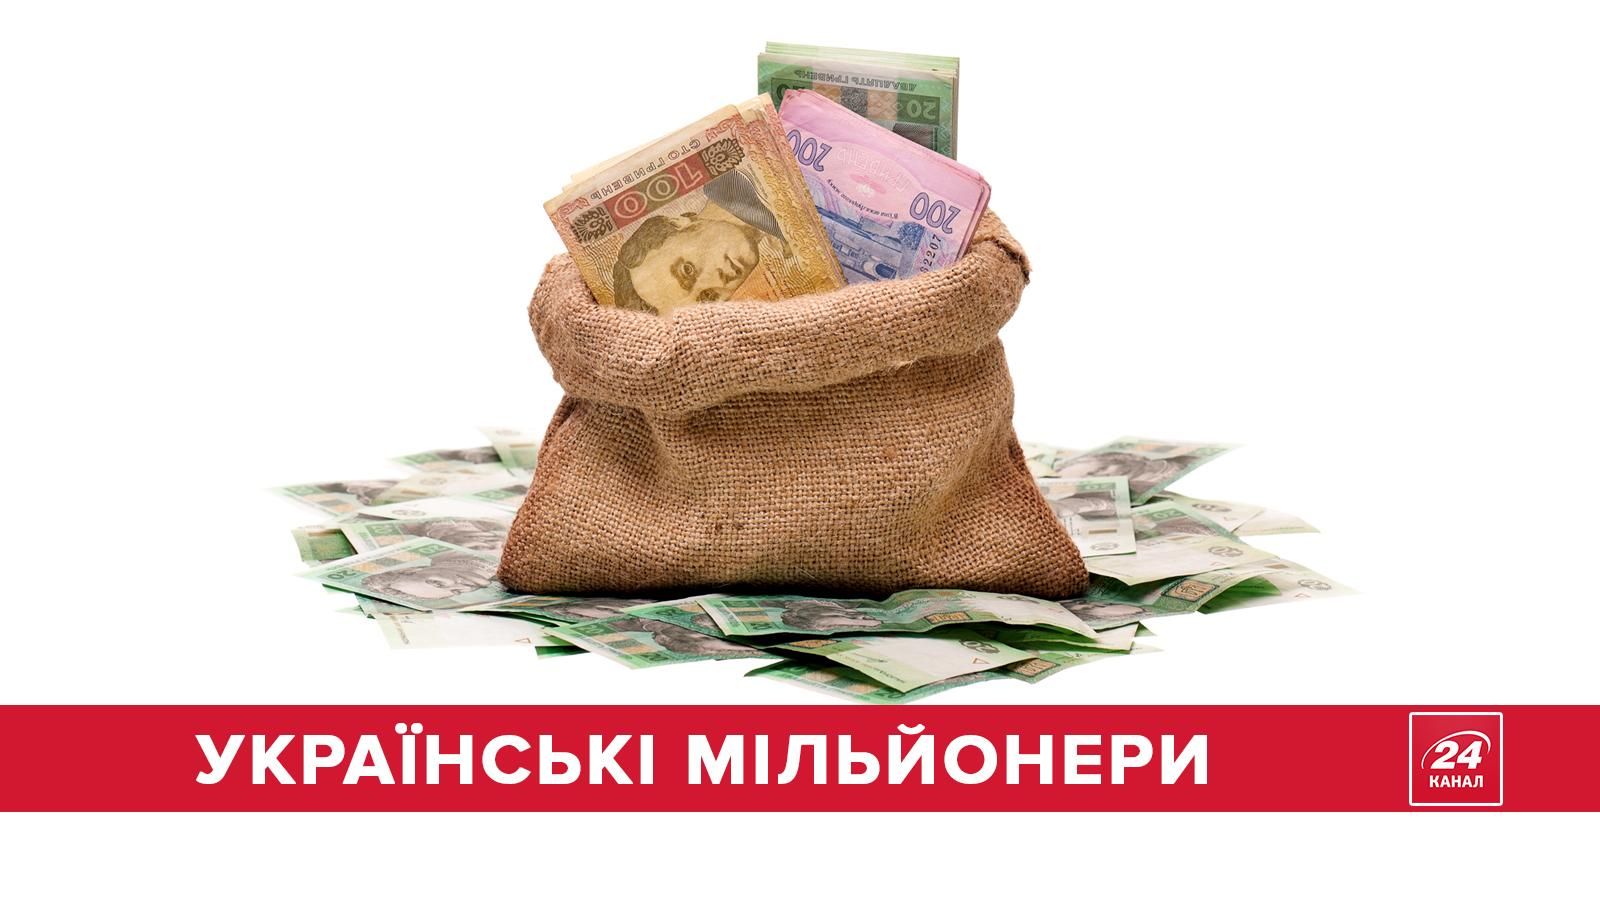 Как менялось количество миллионеров в Украине